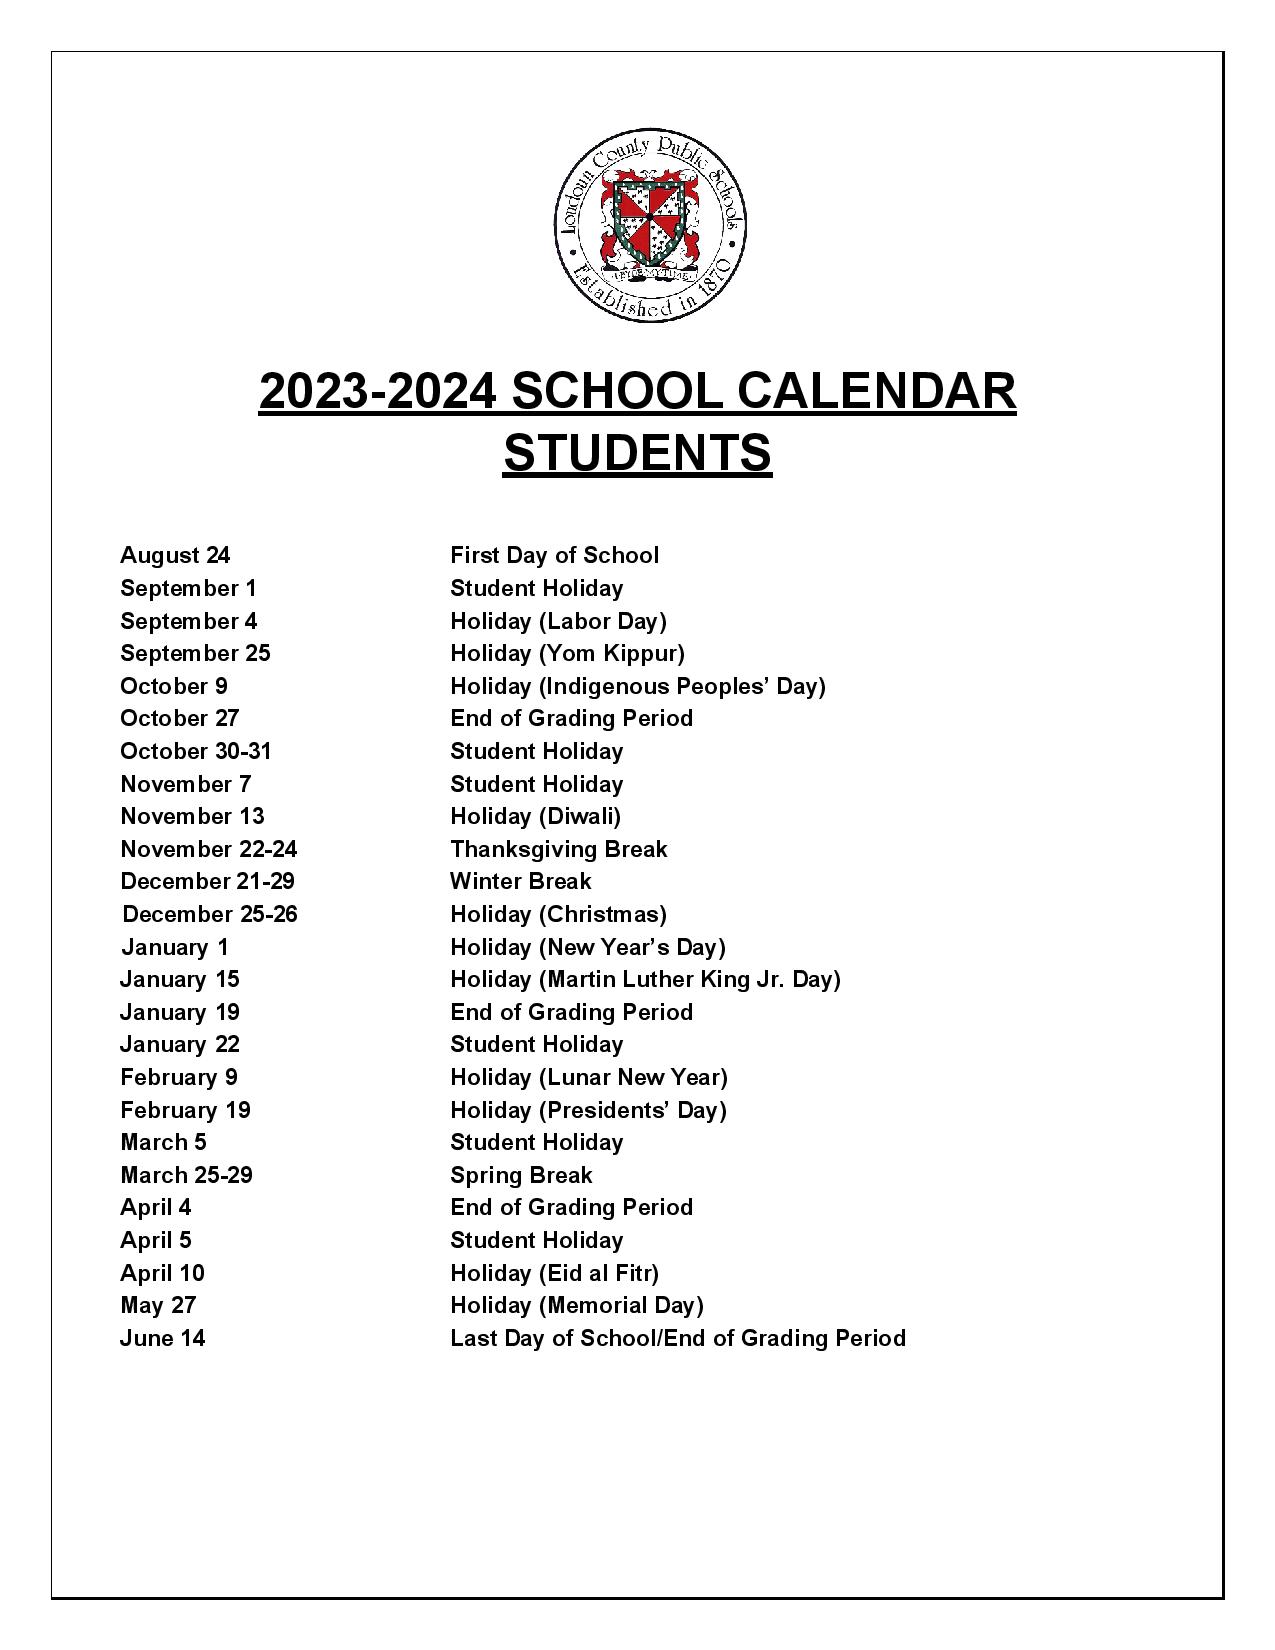 loudoun-county-school-calendar-holidays-2023-2024-lcps